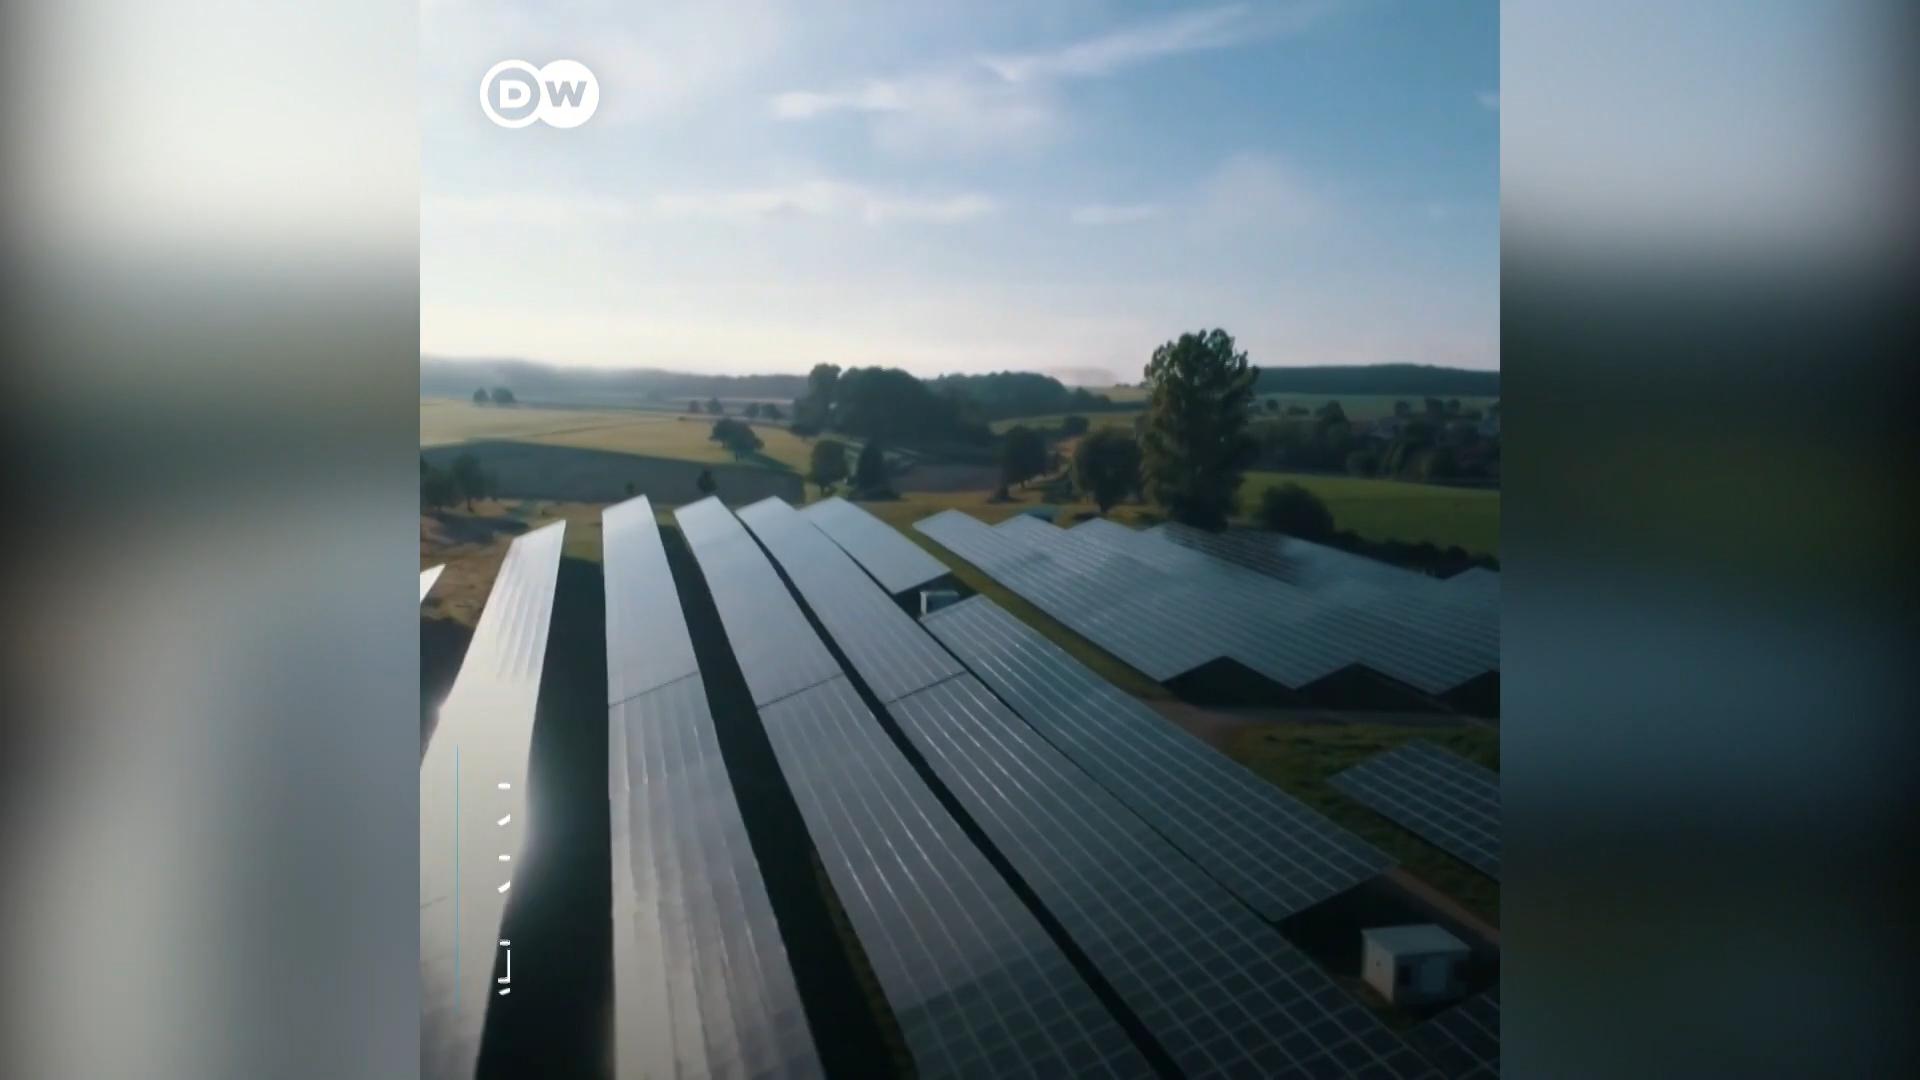 太阳能发电板正在世界的各个角落生产清洁能源，可是制造这些光伏发电板却会排放不少污染物以及温室气体。随着技术的进步、工艺的改良，光伏发电板的生产过程今后也有望更环保。